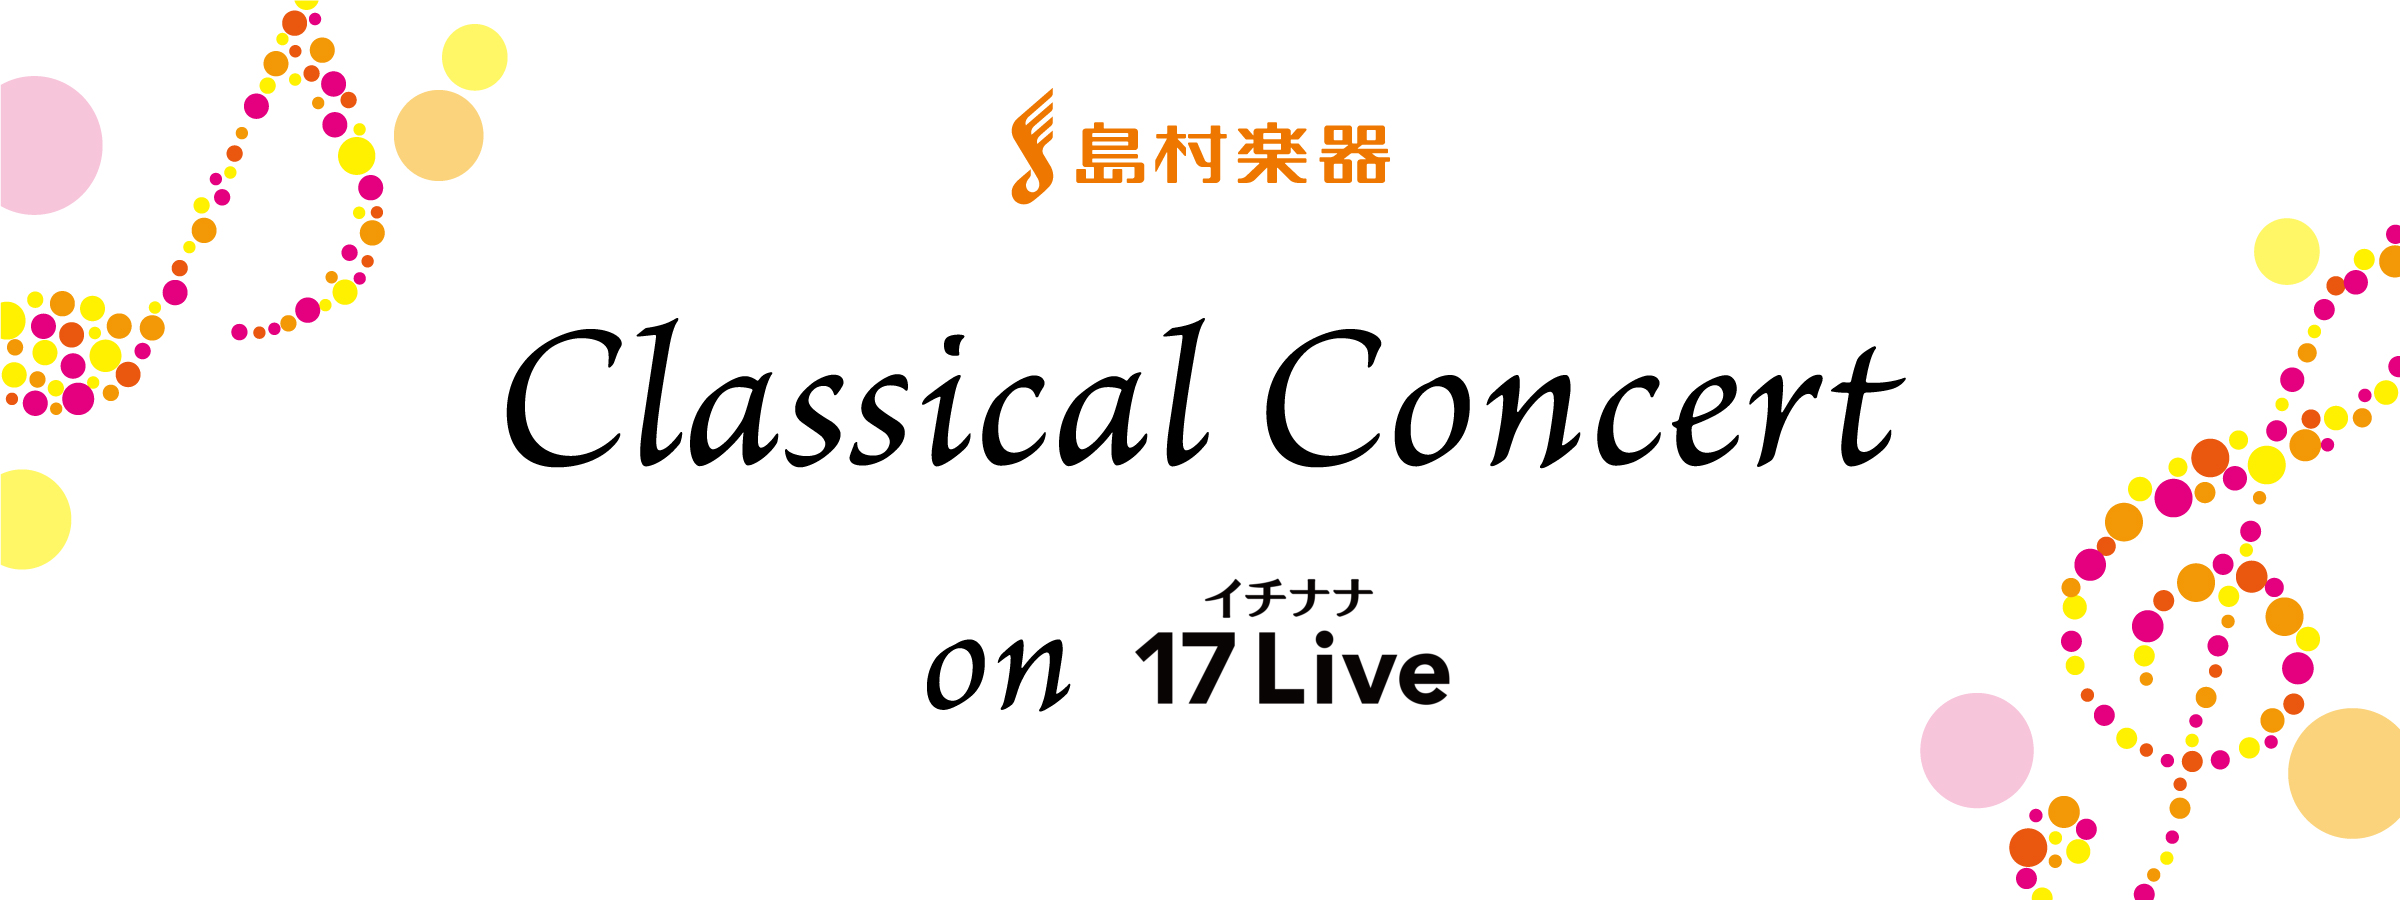 島村楽器クラシカルコンサート on 17Live